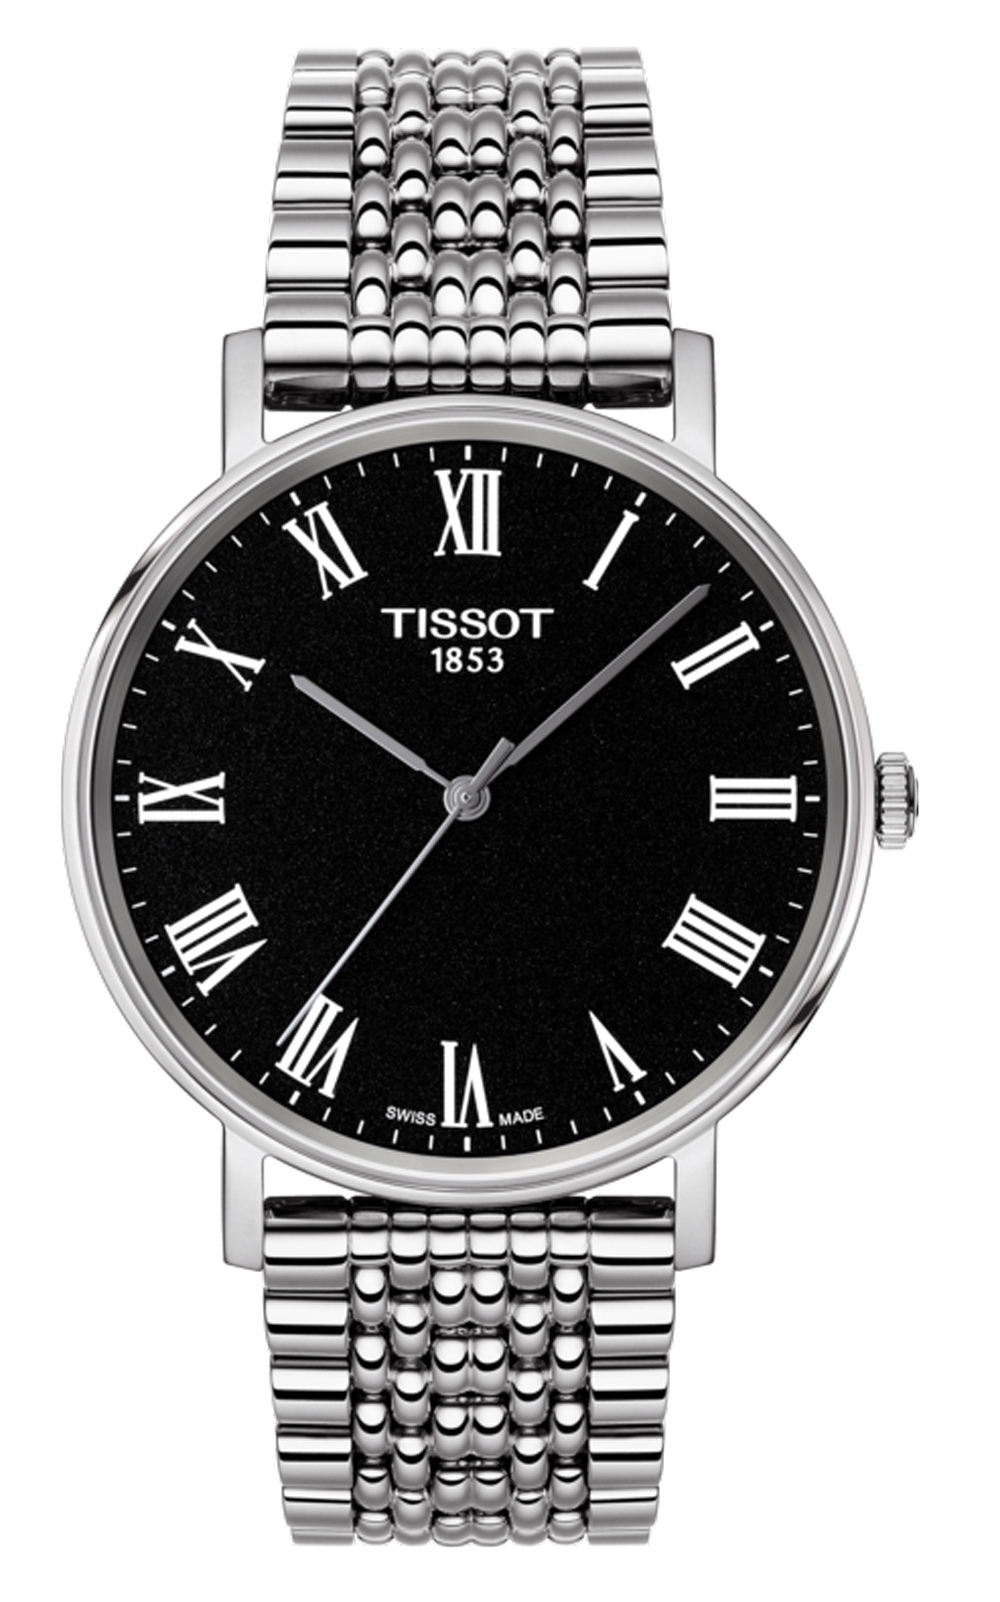 Đồng hồ nam Tissot Everytime Medium T109.410.11.053.00